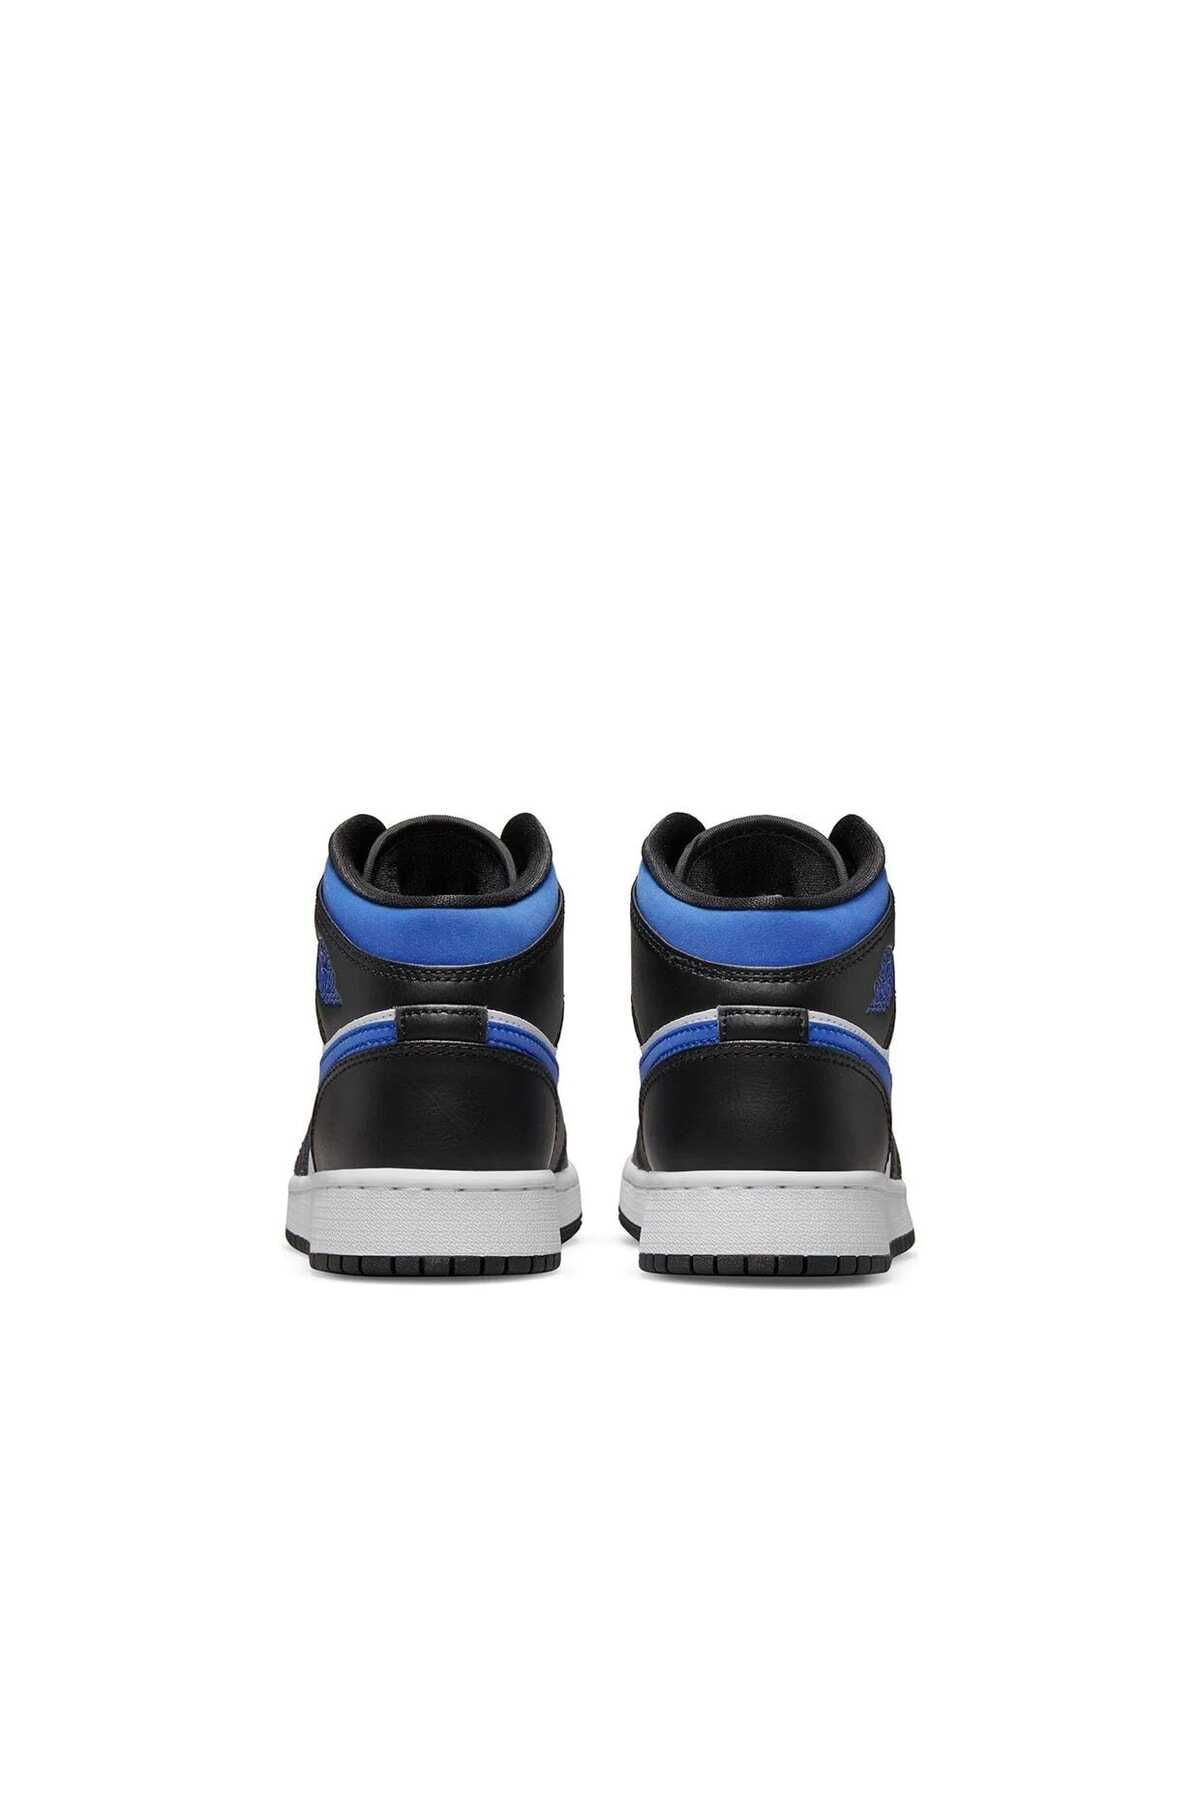 کفش بسکتبال جردن زنانه مشکی سفید مدل Racer Blue برند Nike 